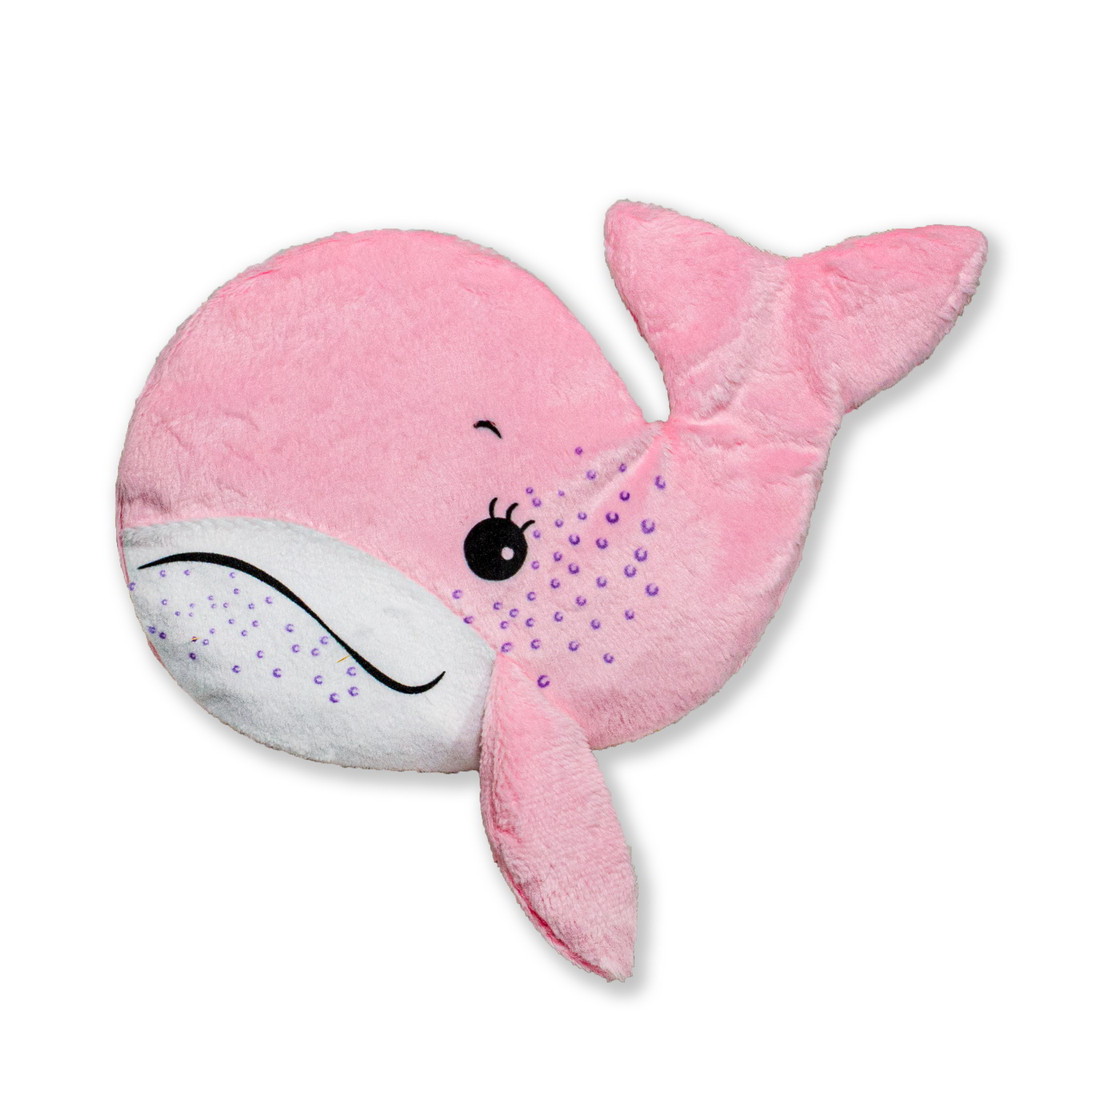 фото Игрушка-грелка с вишневыми косточками штучки, к которым тянутся ручки кит, розовый